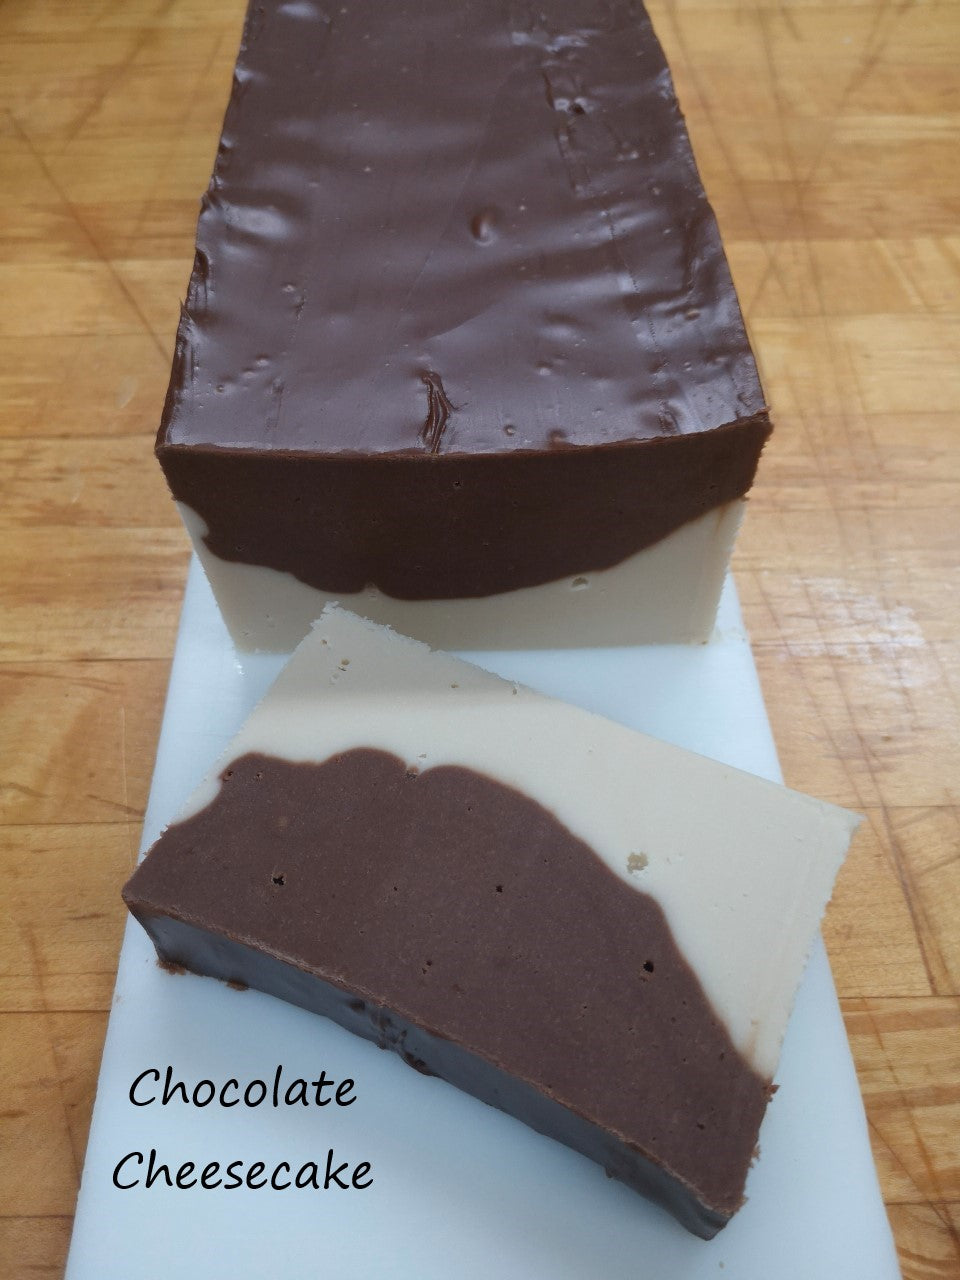 10 Chocolate Cheesecake - 1/2 lb. Deli - $38.50